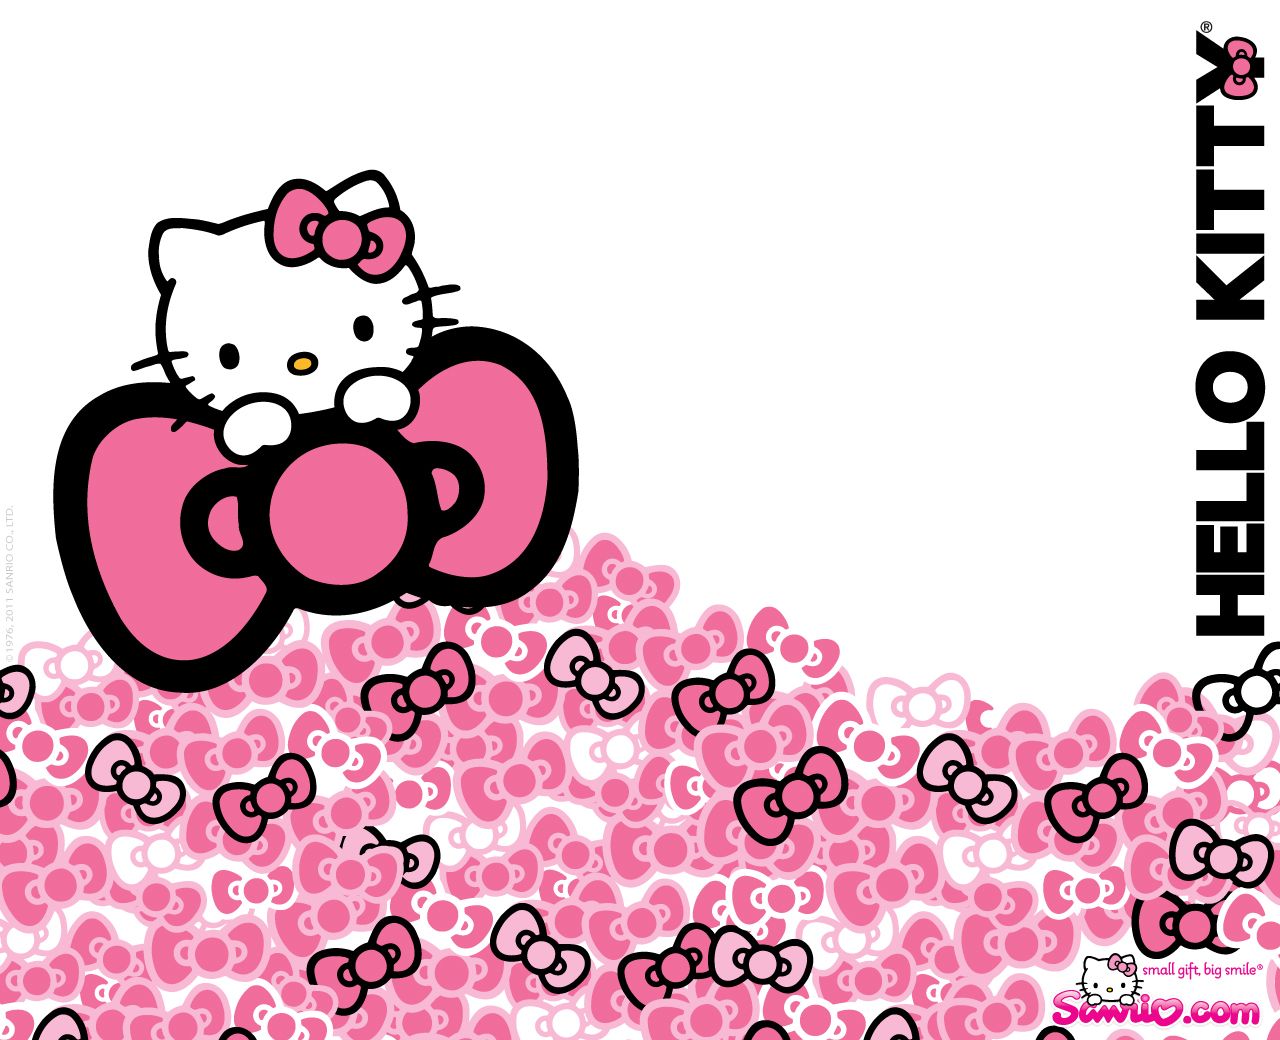 hello kitty on Pinterest | Hello Kitty Wallpaper, Hello Kitty ...